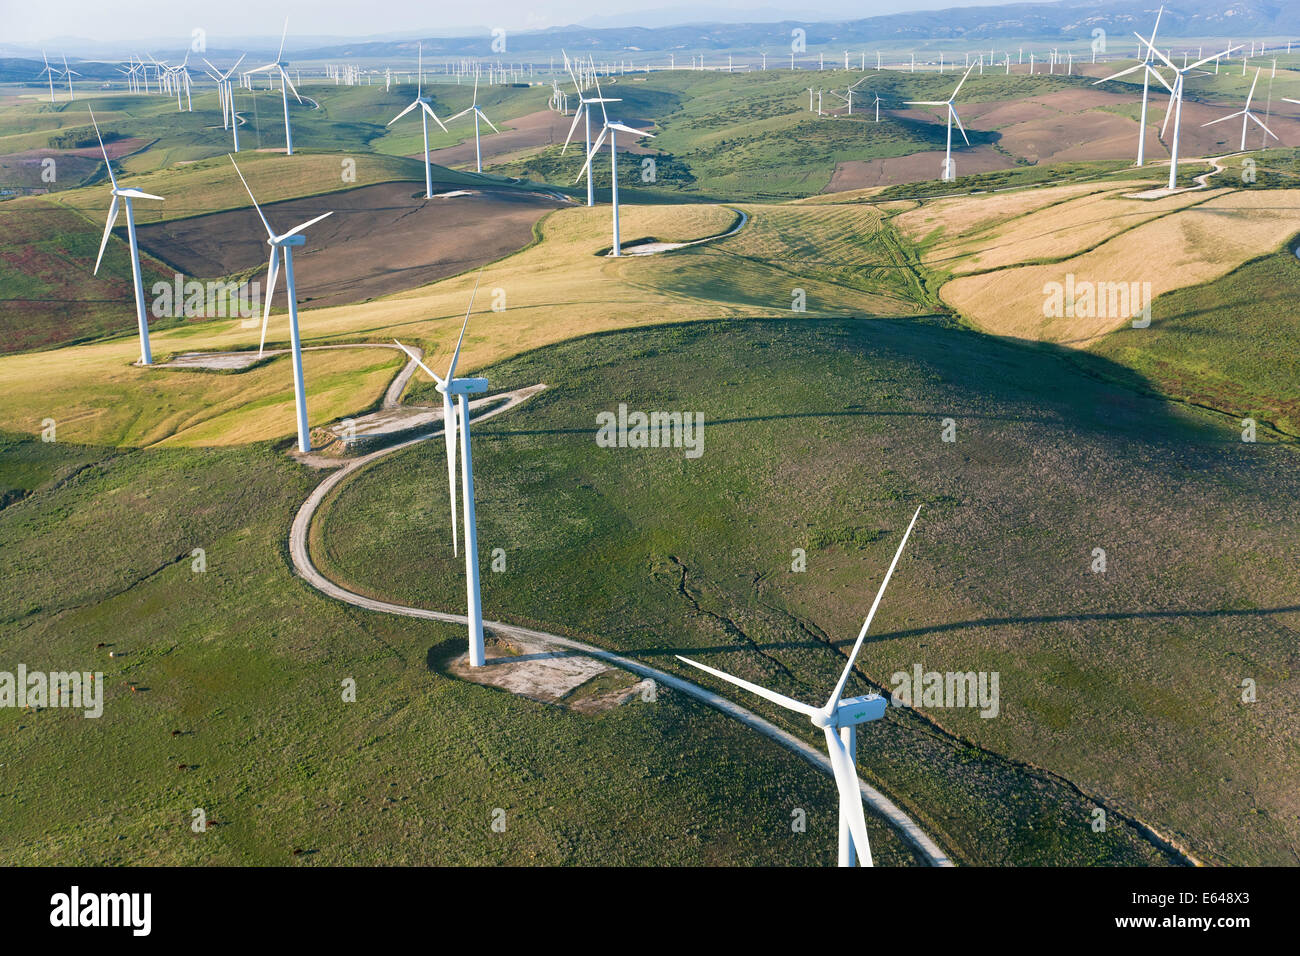 Vue aérienne des éoliennes la Province de Huelva, Espagne Banque D'Images